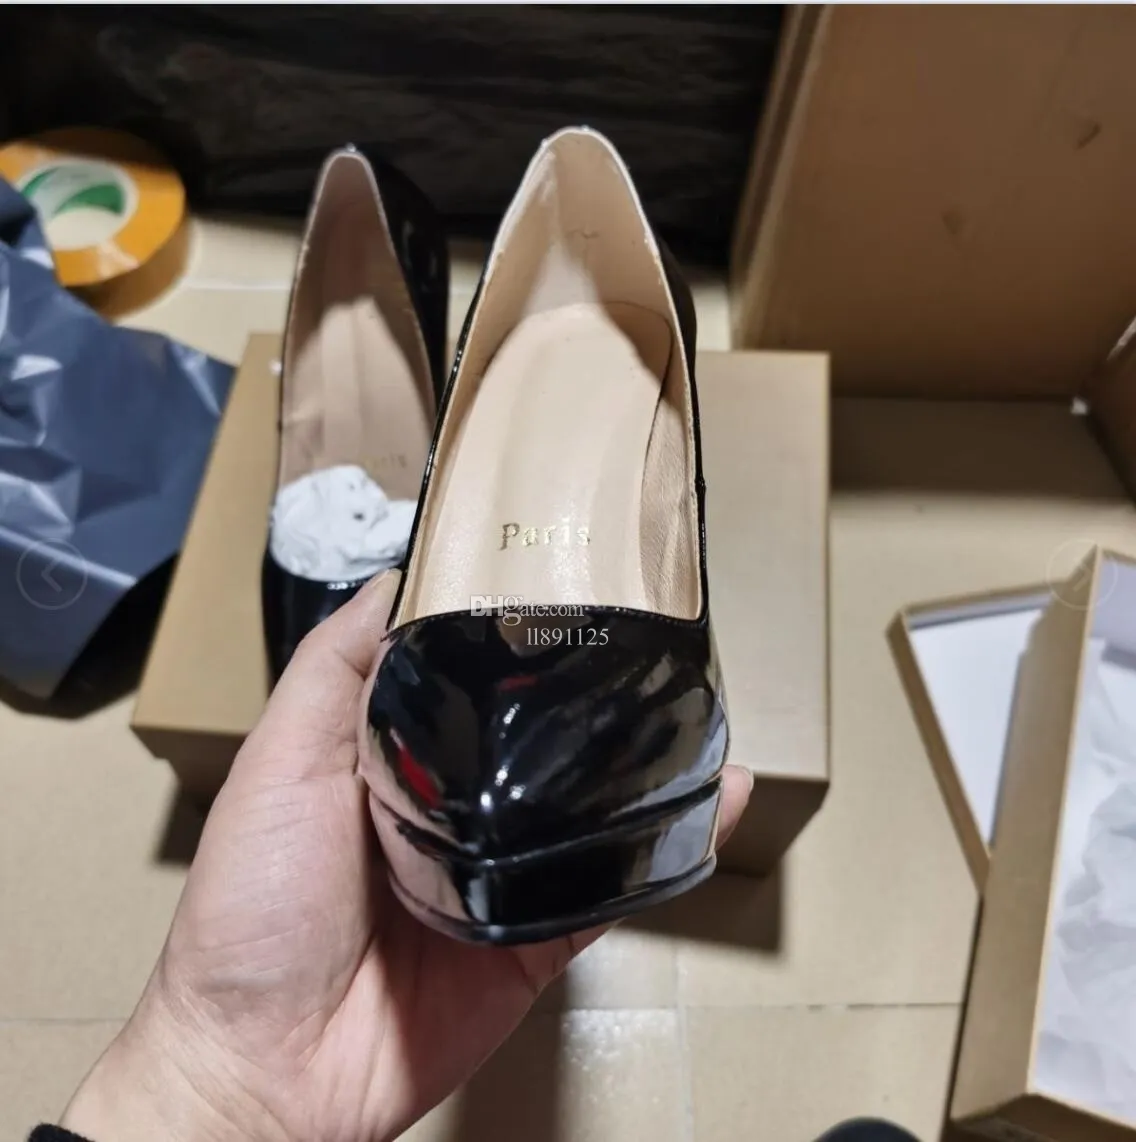 7A Женские сапоги высокого качества Модельные туфли Высокие каблуки Роскошные женские дизайнерские босоножки из лакированной кожи с острым носком Туфли на каблуках 6 см, 8 см, 10 см, 12 см Бесплатная доставка 667789